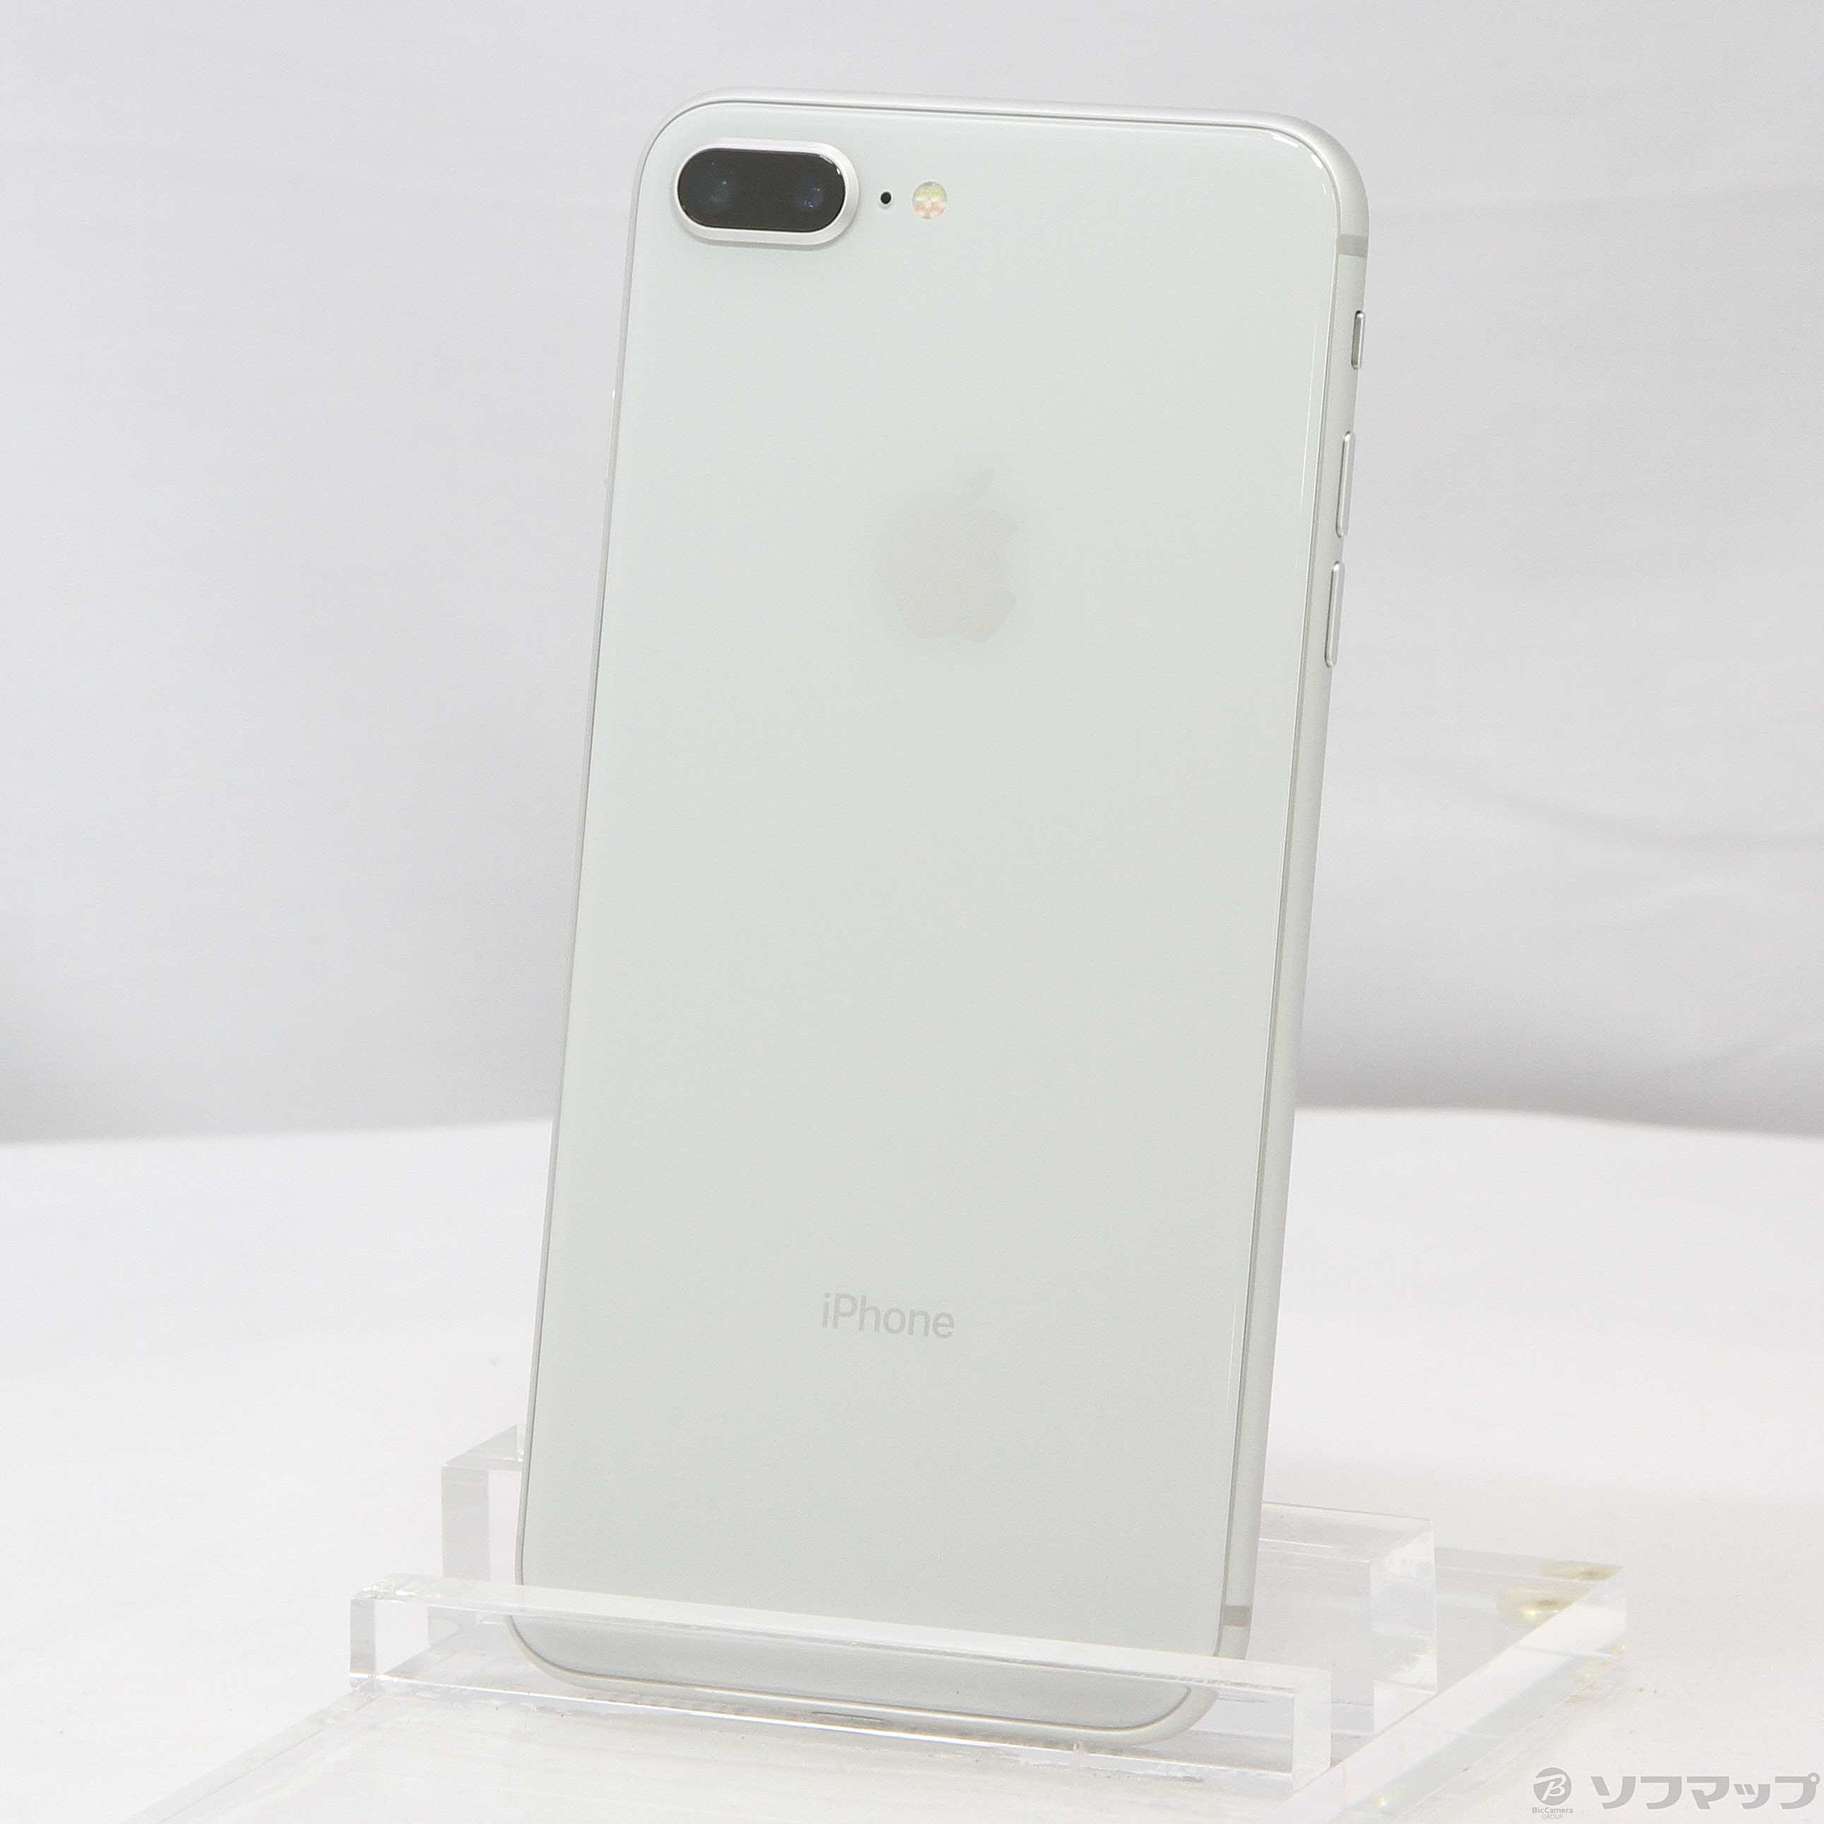 iPhone 8 Silver 64 GB SIMフリー スマートフォン本体 スマートフォン/携帯電話 家電・スマホ・カメラ 非対面販売